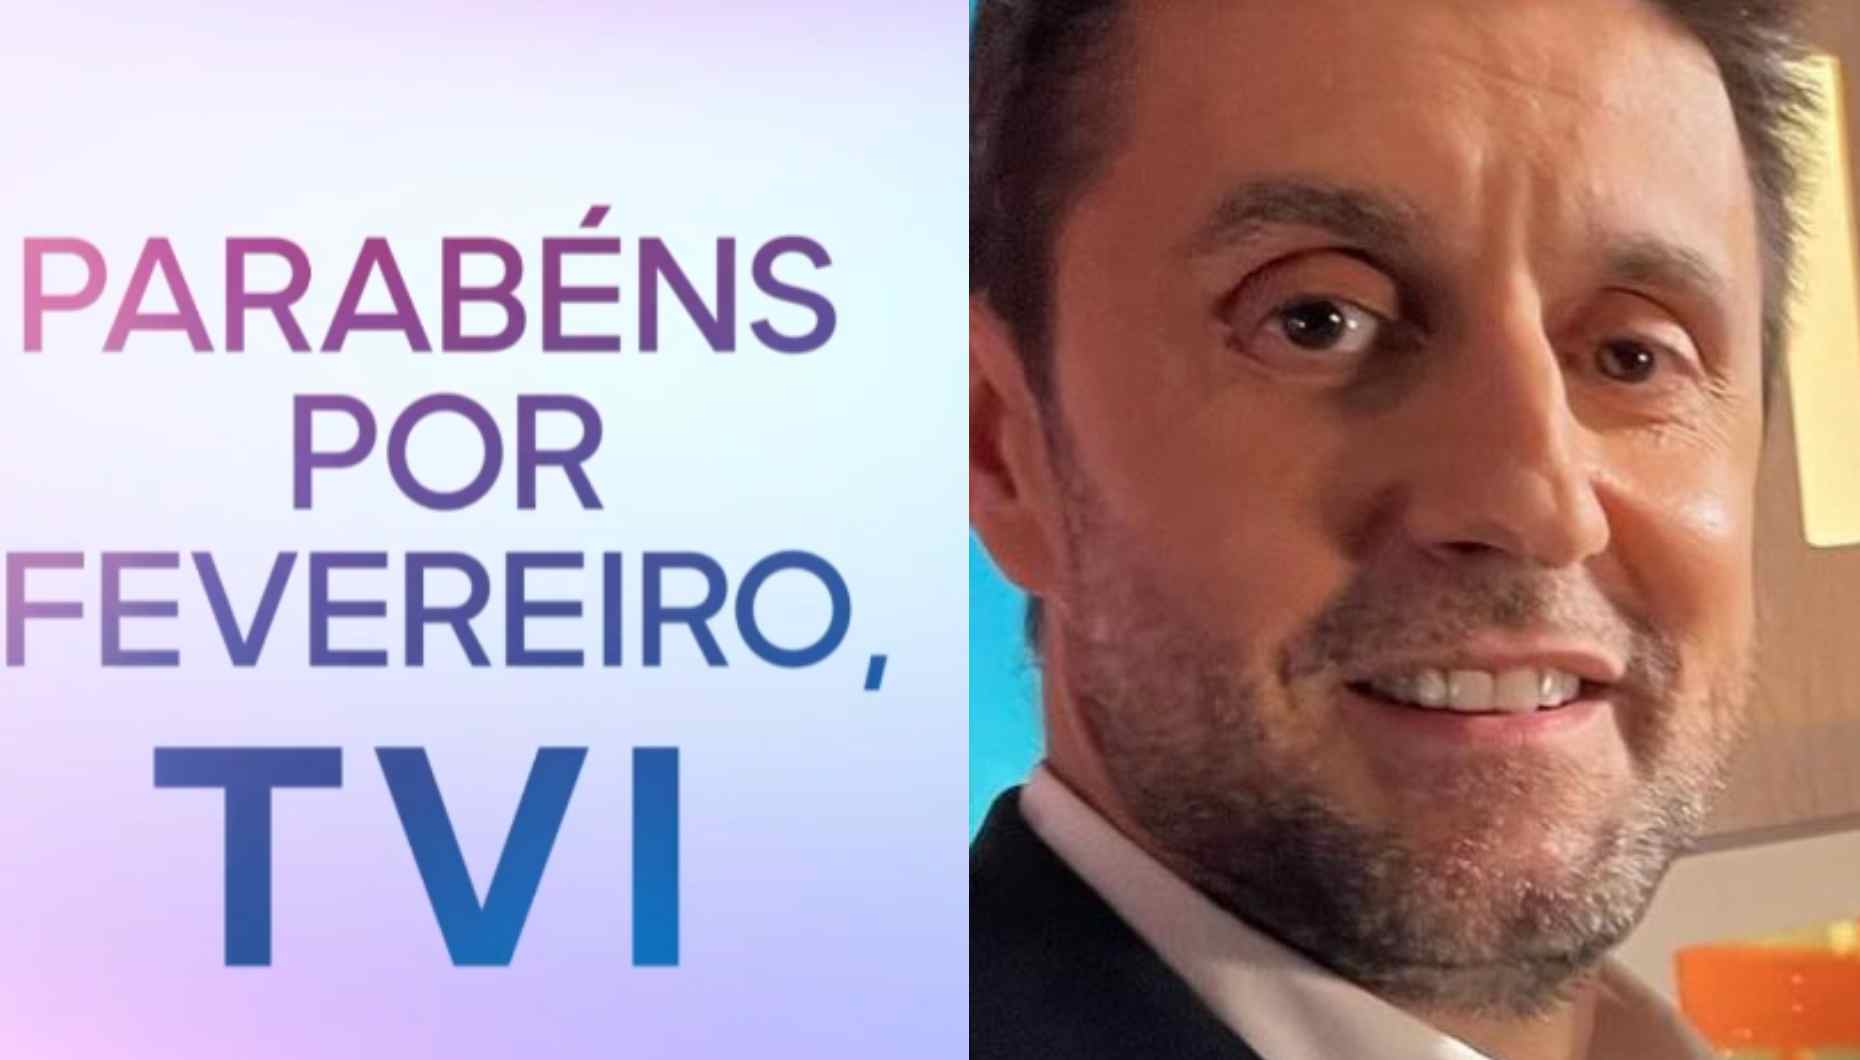 Audiências Daniel Oliveira assume perda para TVI em 'comunicado'